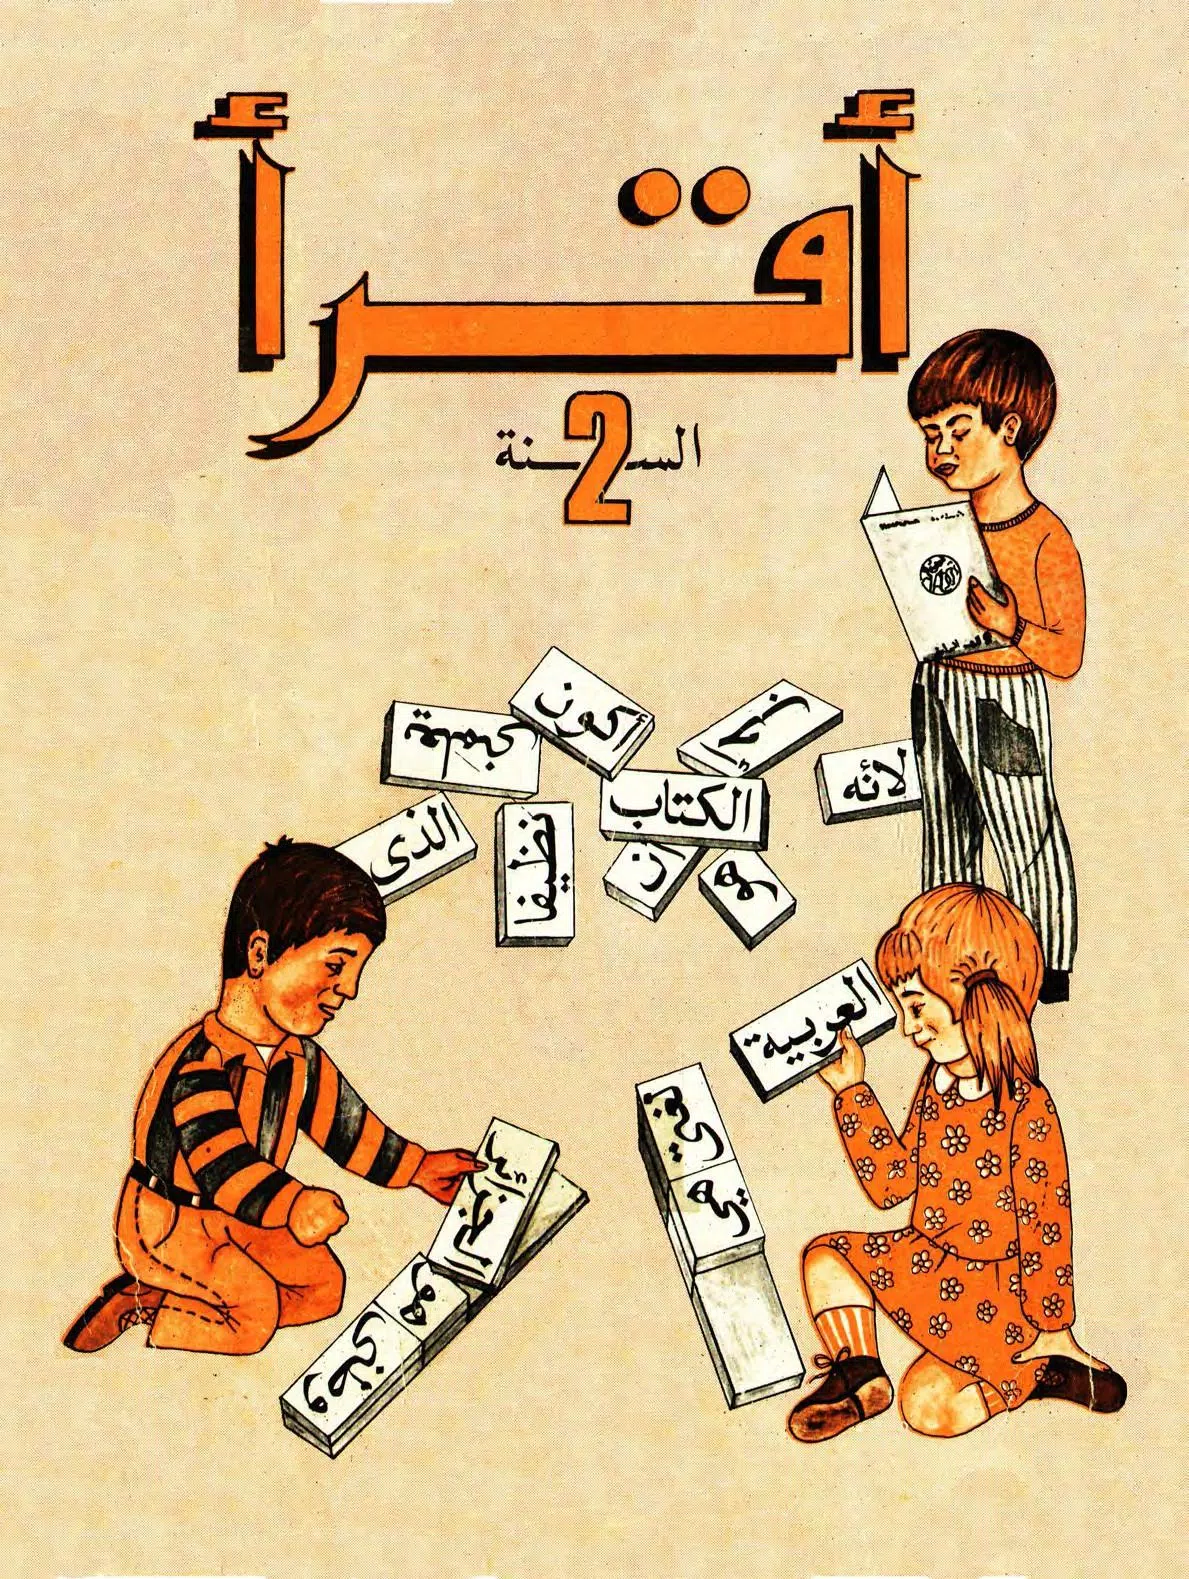 كتاب القراءة القديم الثانية إبتدائي في الجزائر APK für Android herunterladen